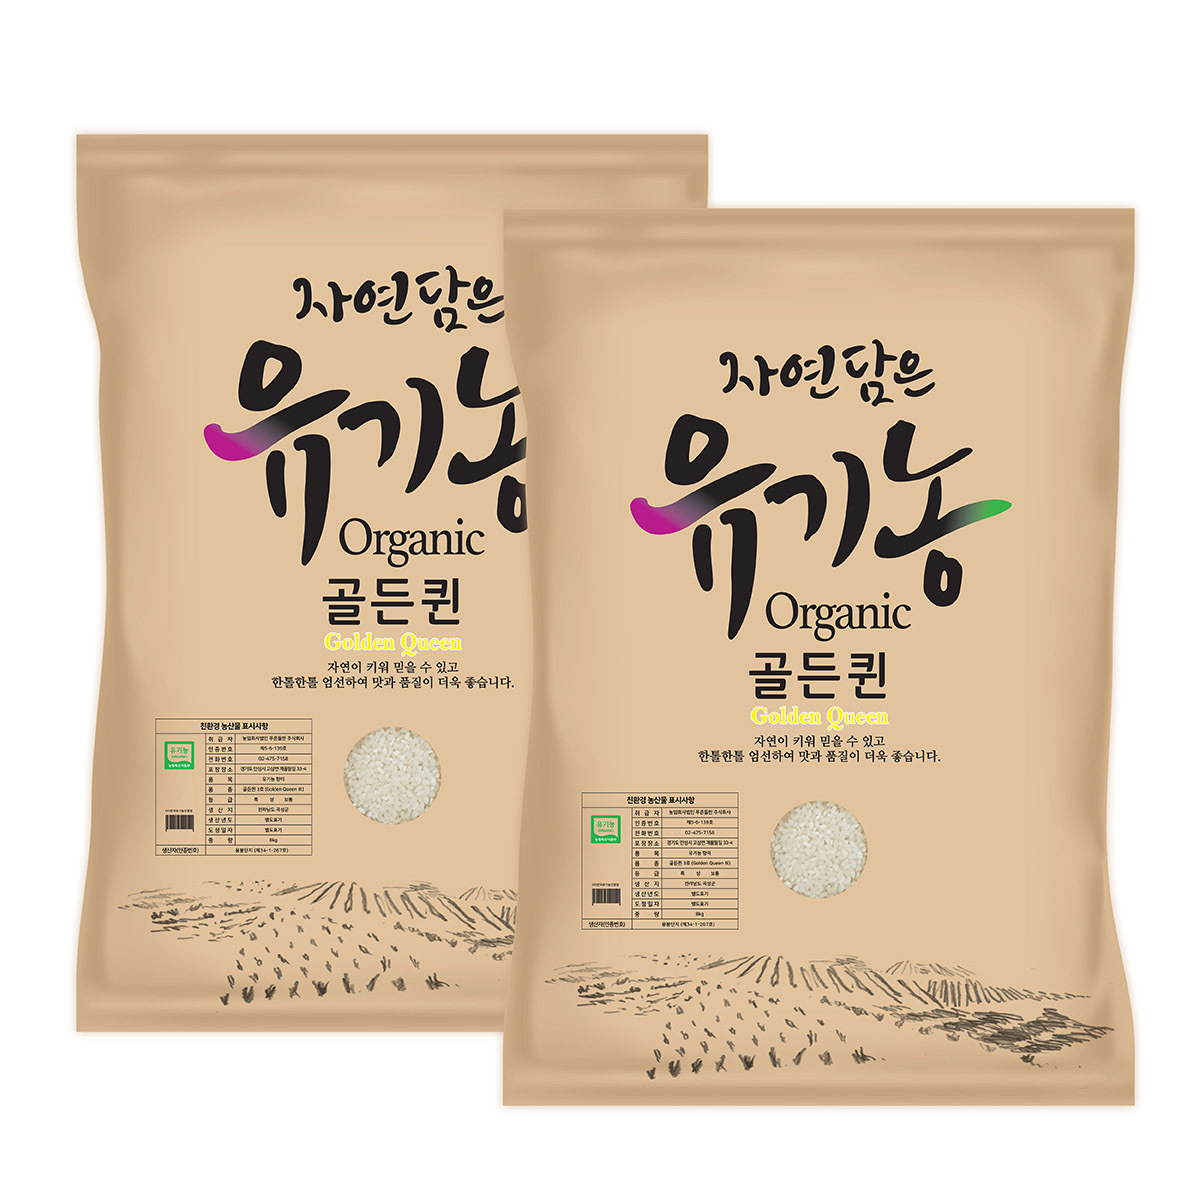 푸른들판 유기농쌀 골든퀸3호8kg x 2